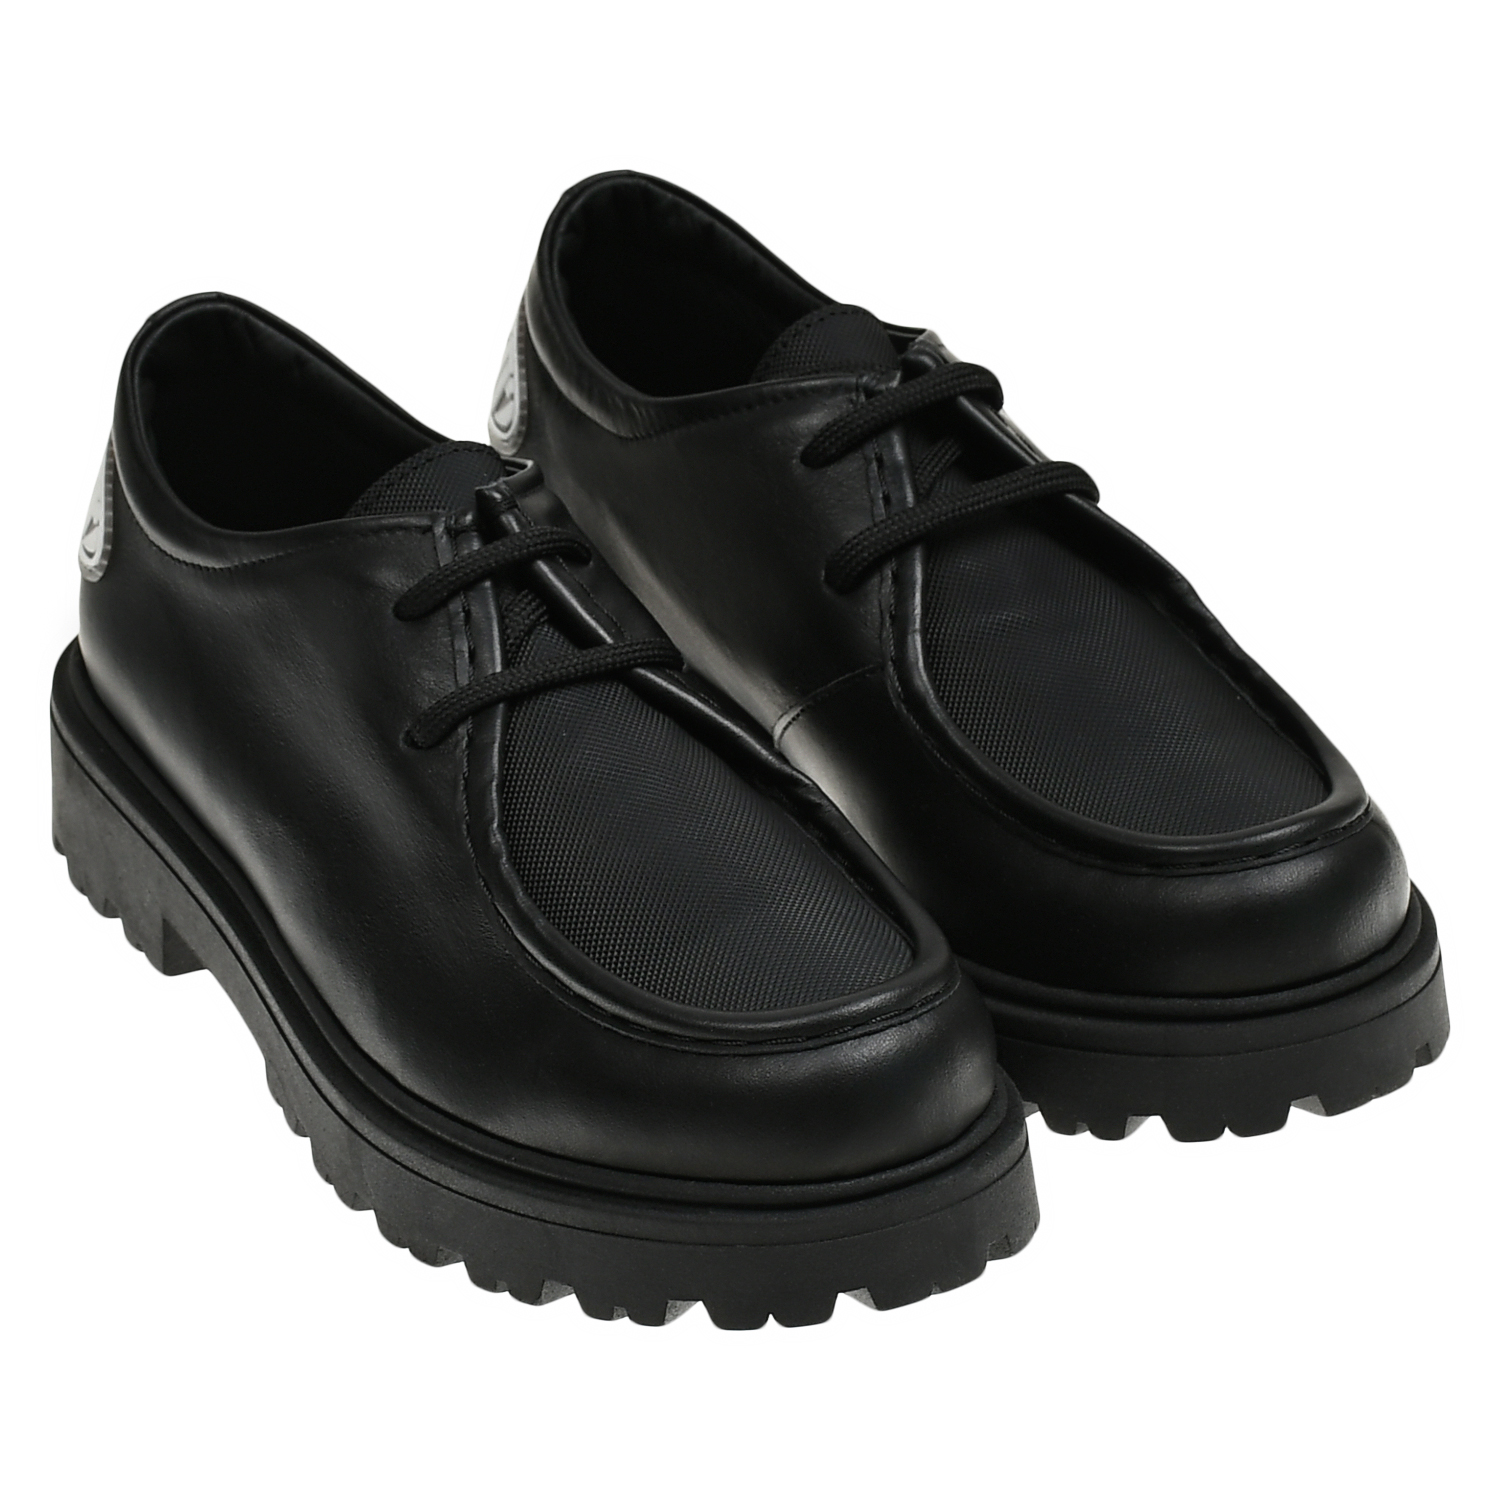 Низкие ботинки со шнурками Dsquared2, размер 37, цвет черный